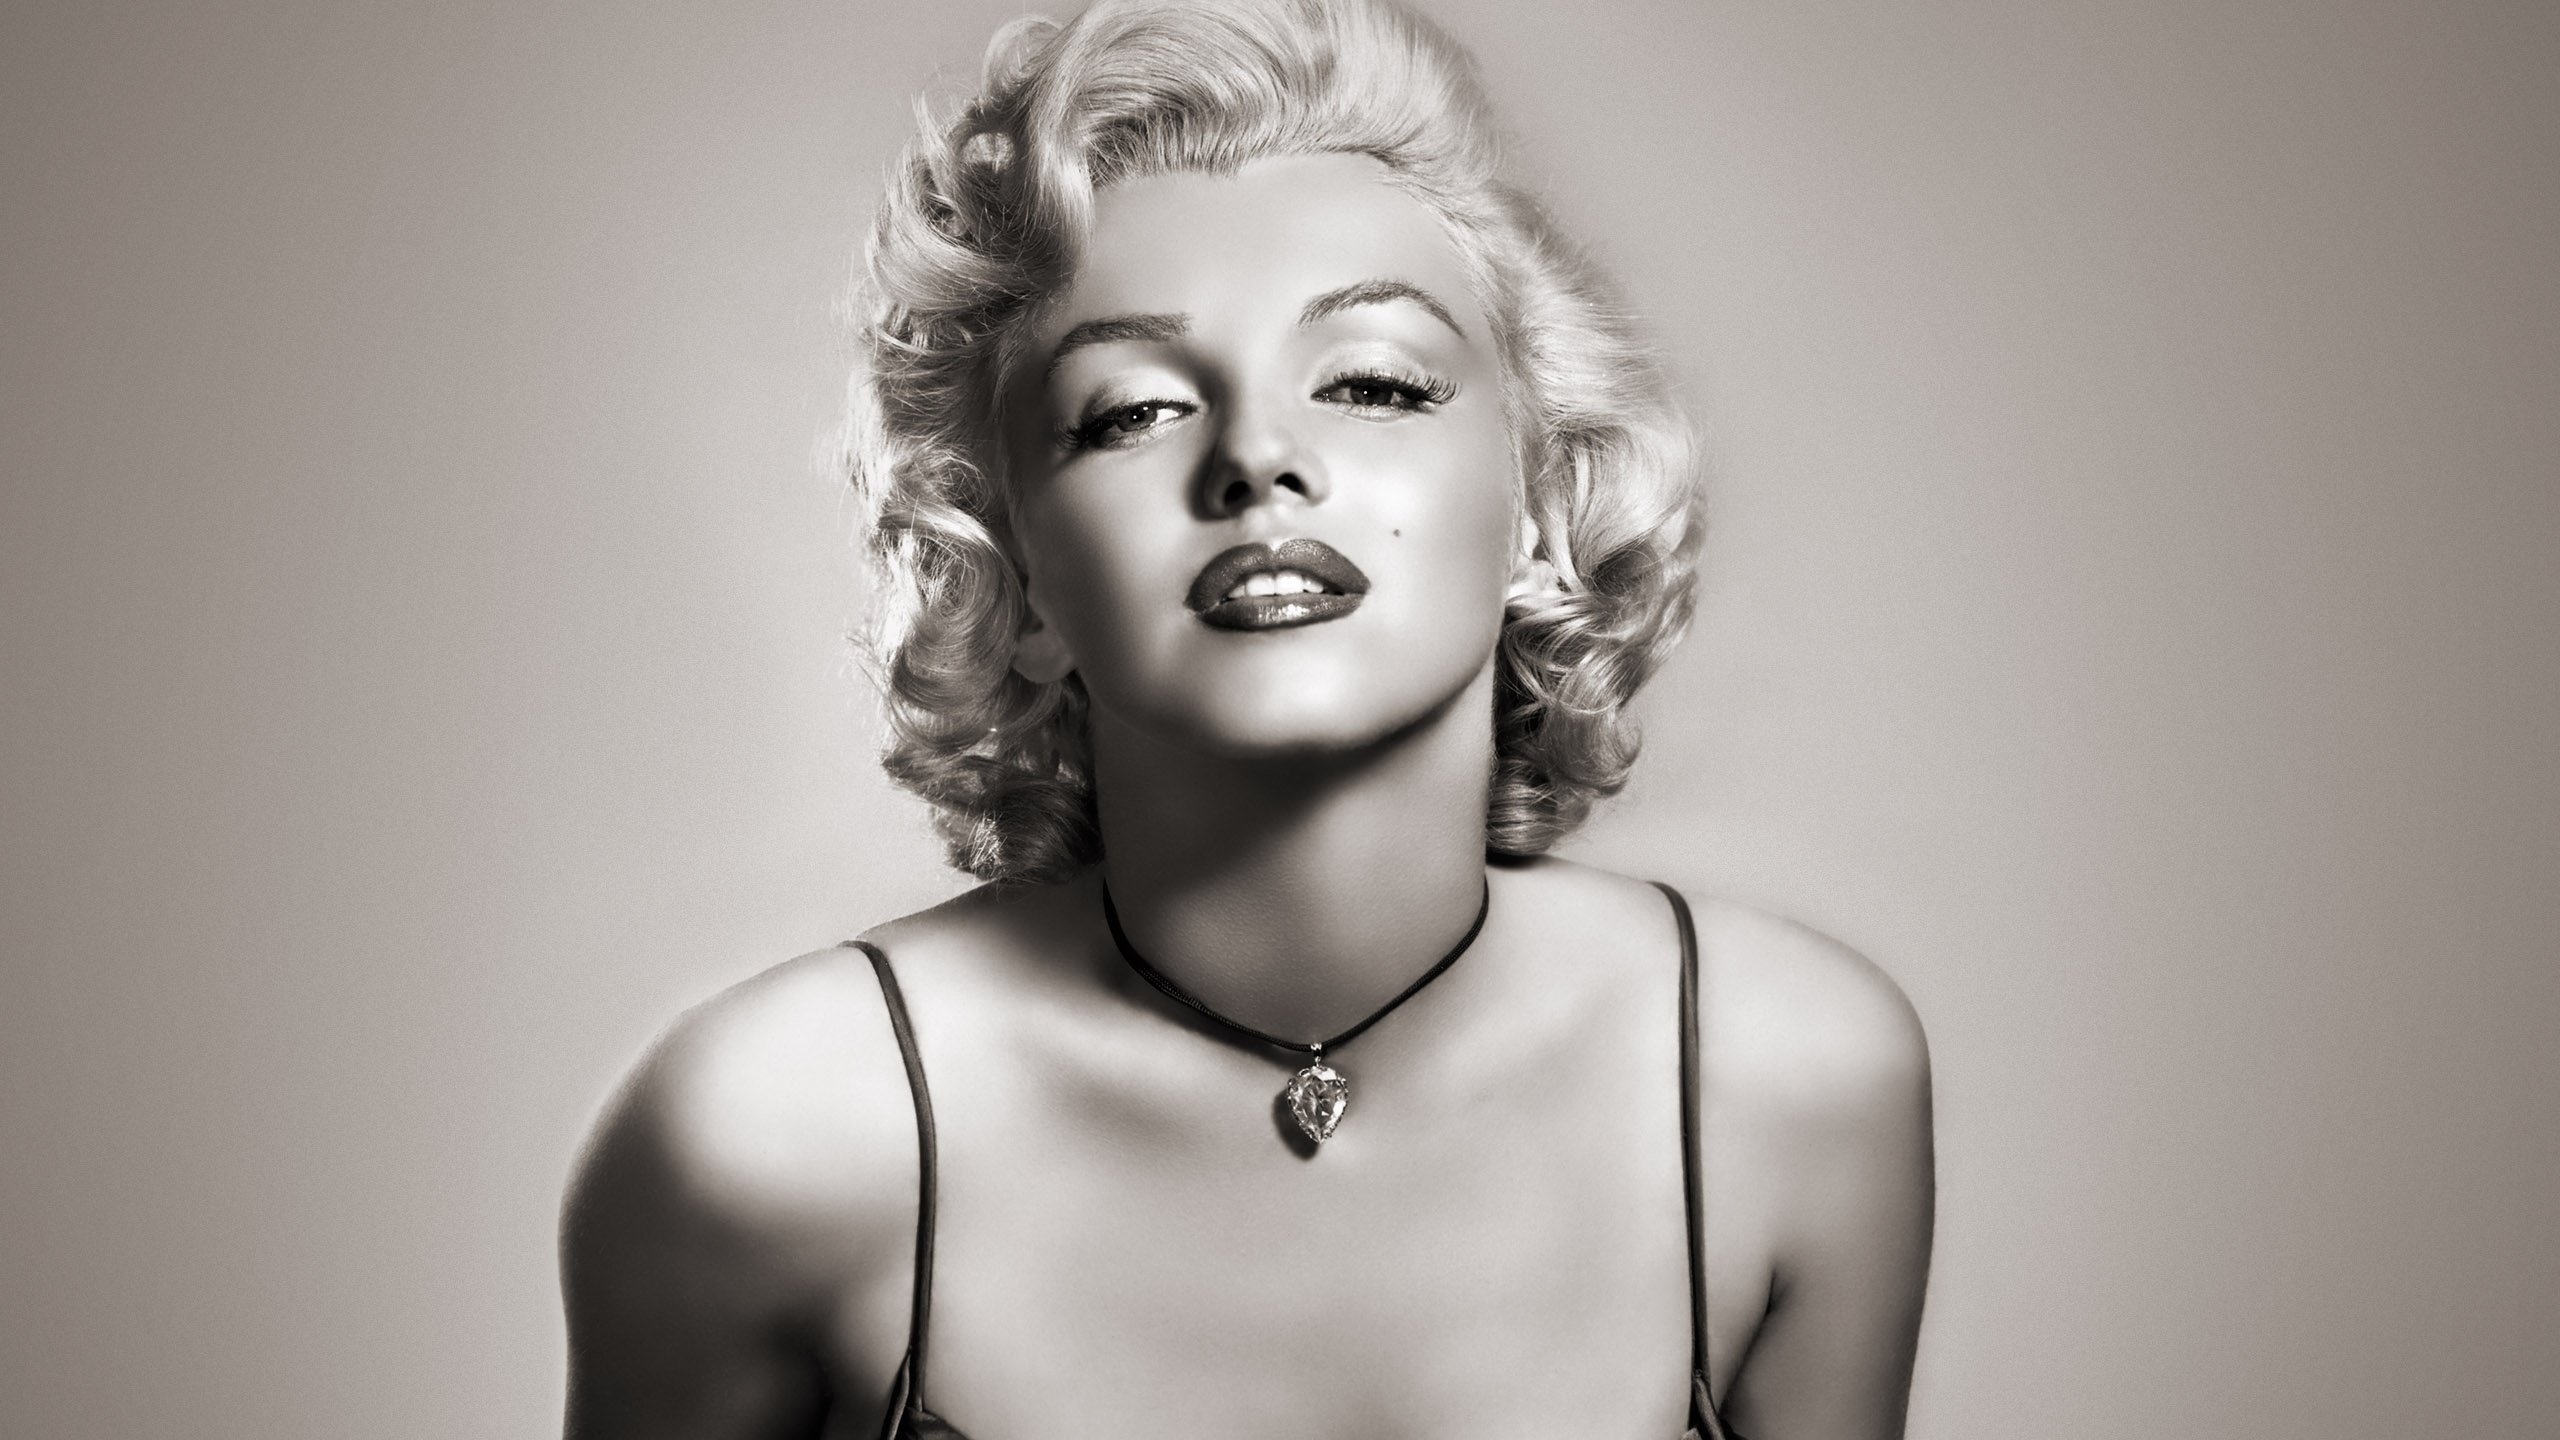 Gorgeous Marilyn Monroe for 2560x1440 HDTV resolution